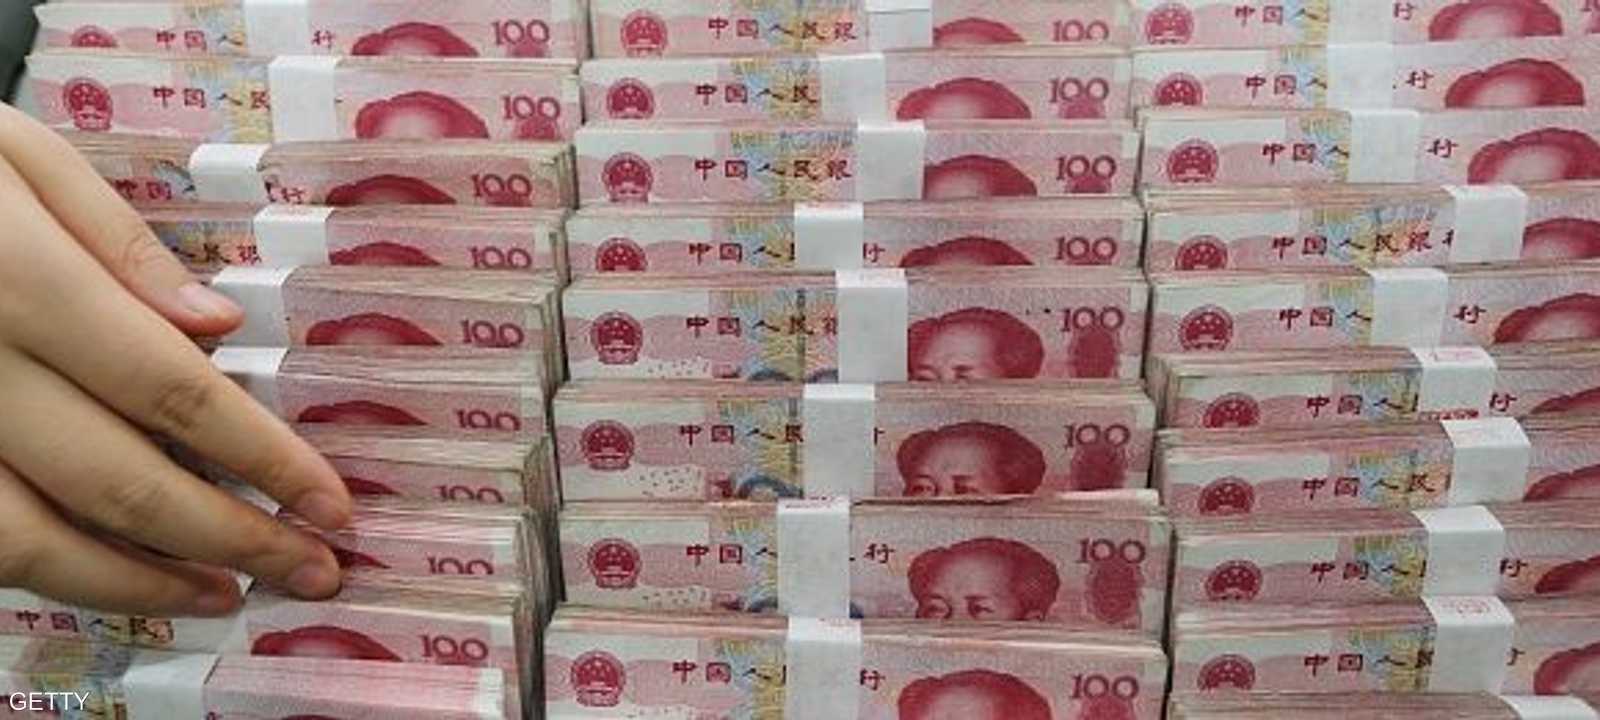 المركزي الصيني دعا إلى عدم القلق إزاء خروج الأموال